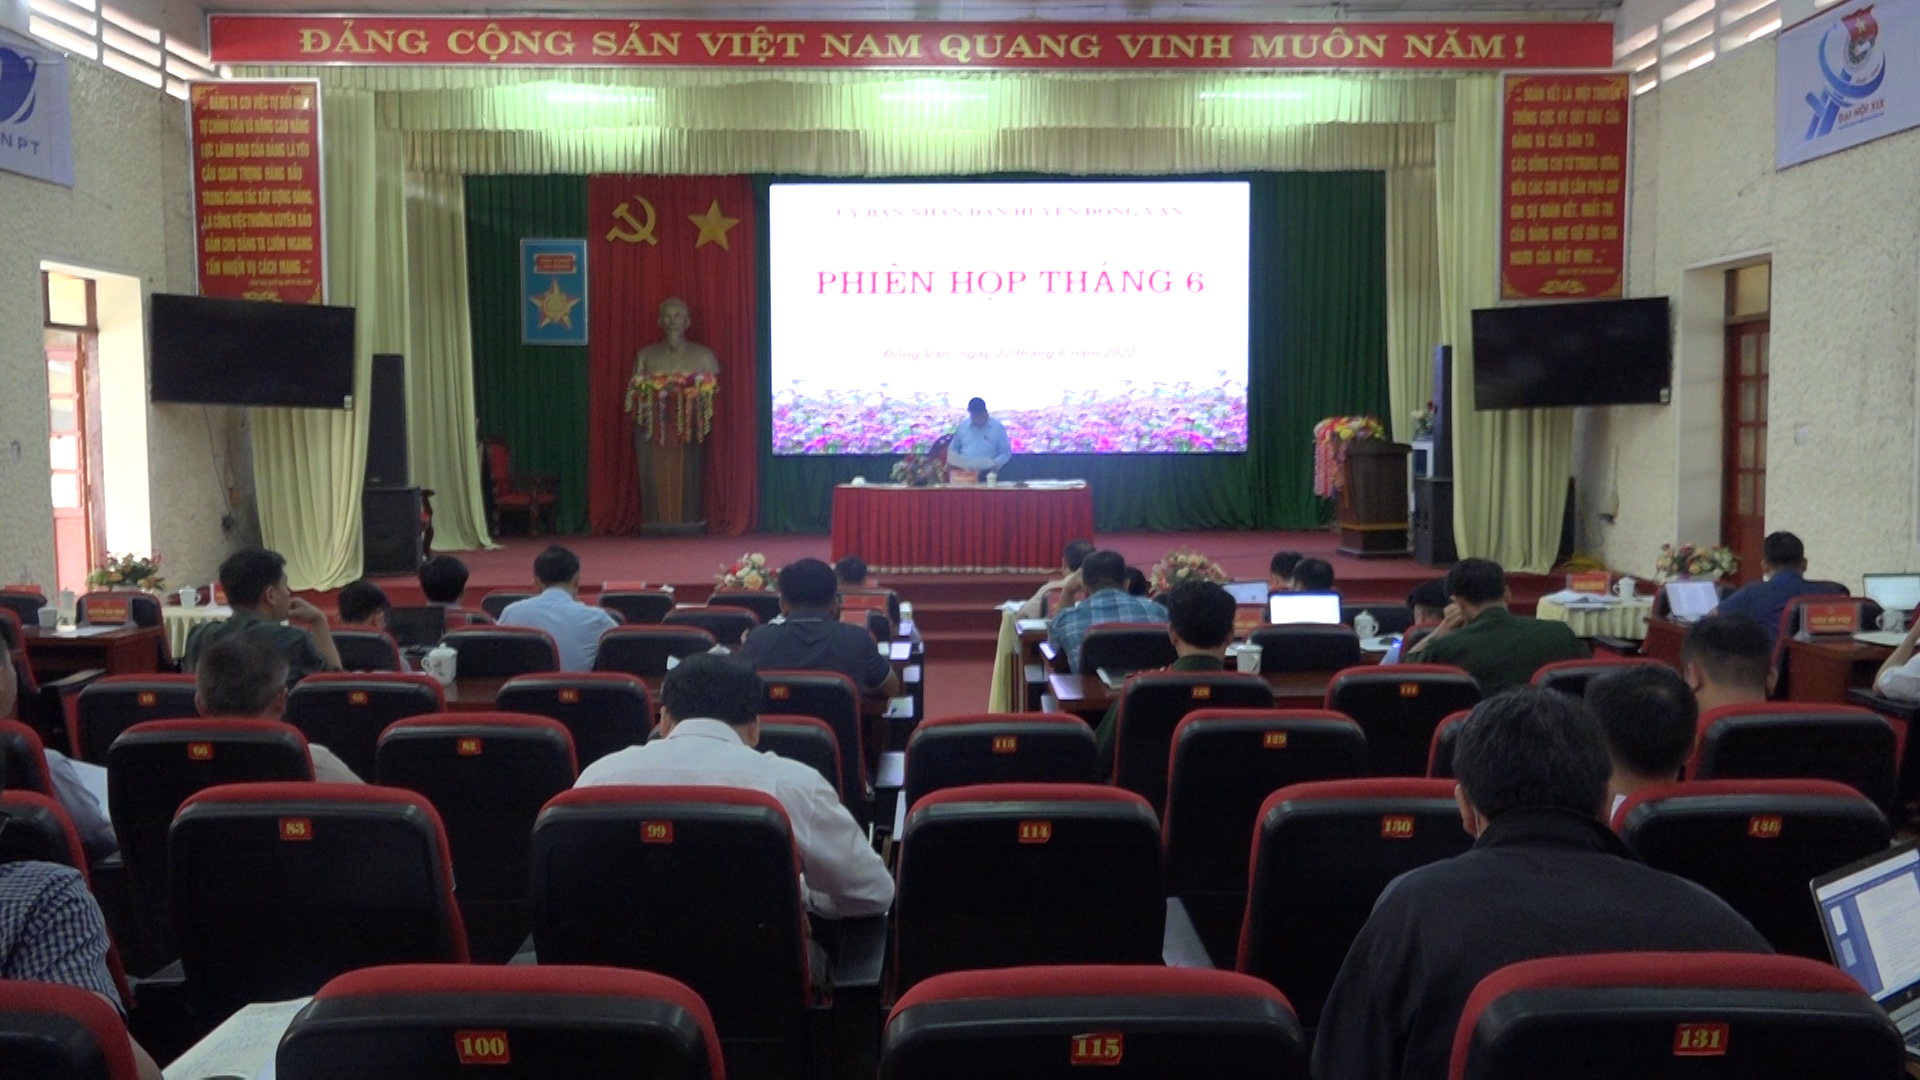 Phiên họp tháng 06 UBND huyện Đồng Văn